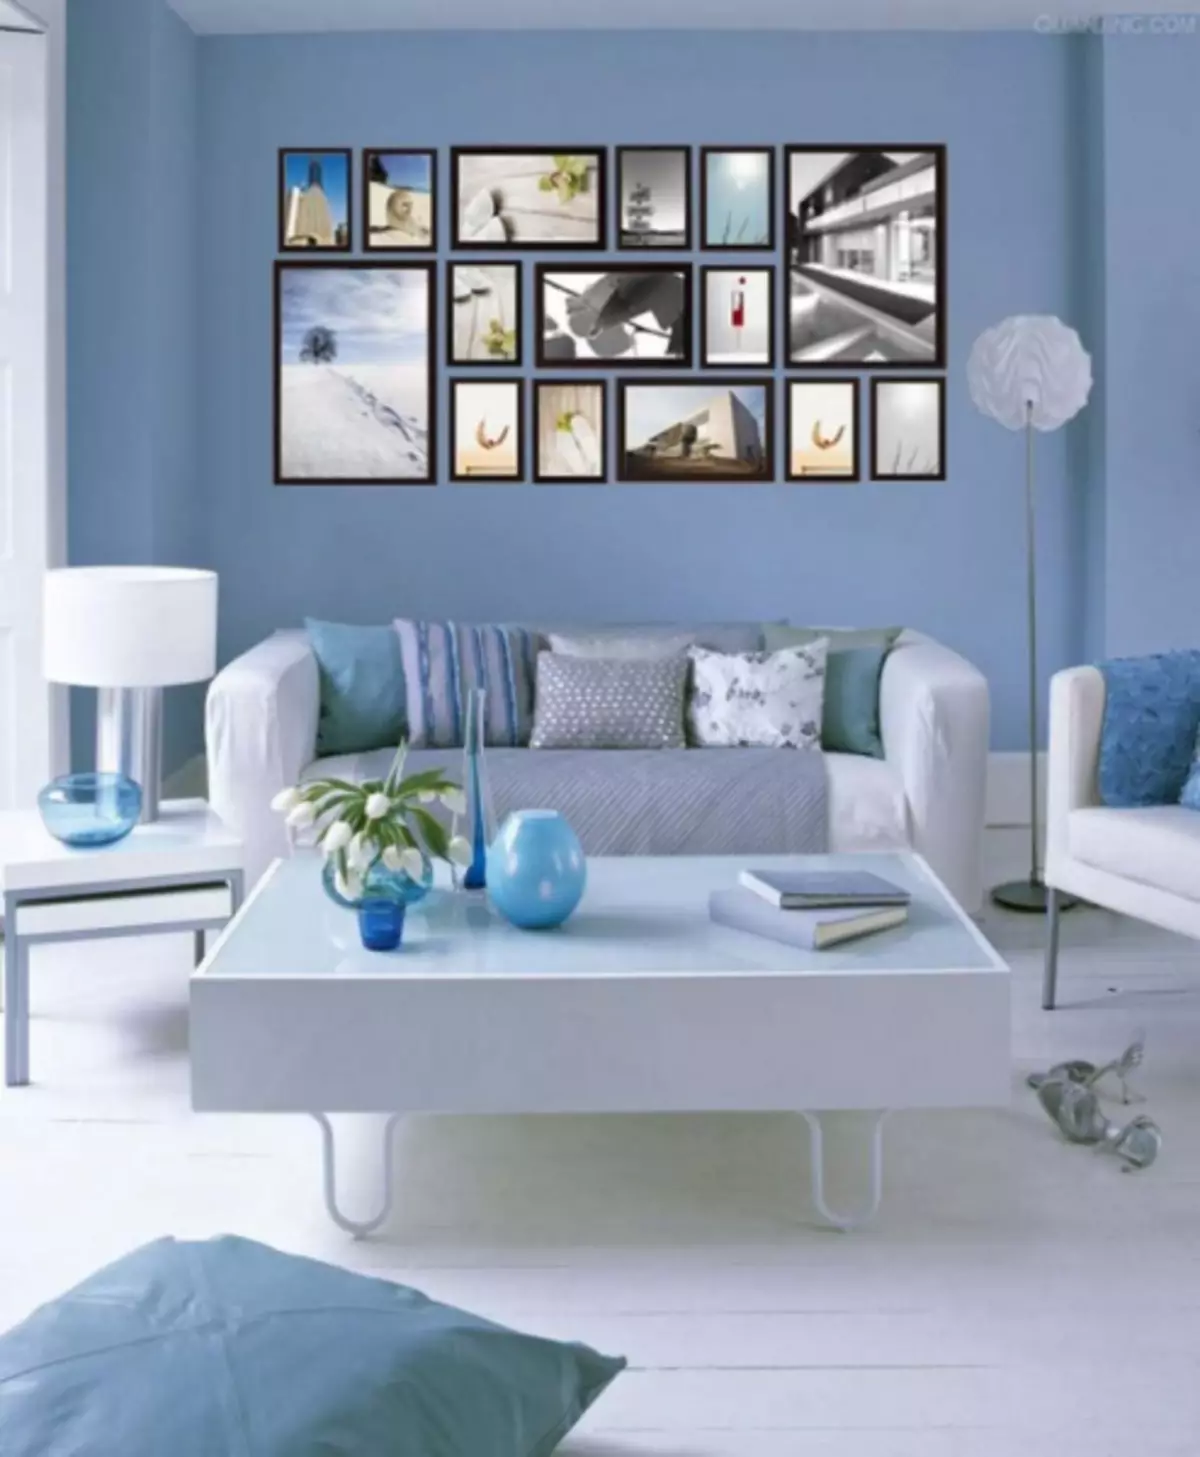 Sala de estar azul - 110 fotos dunha combinación inusual de matices azuis na sala de estar